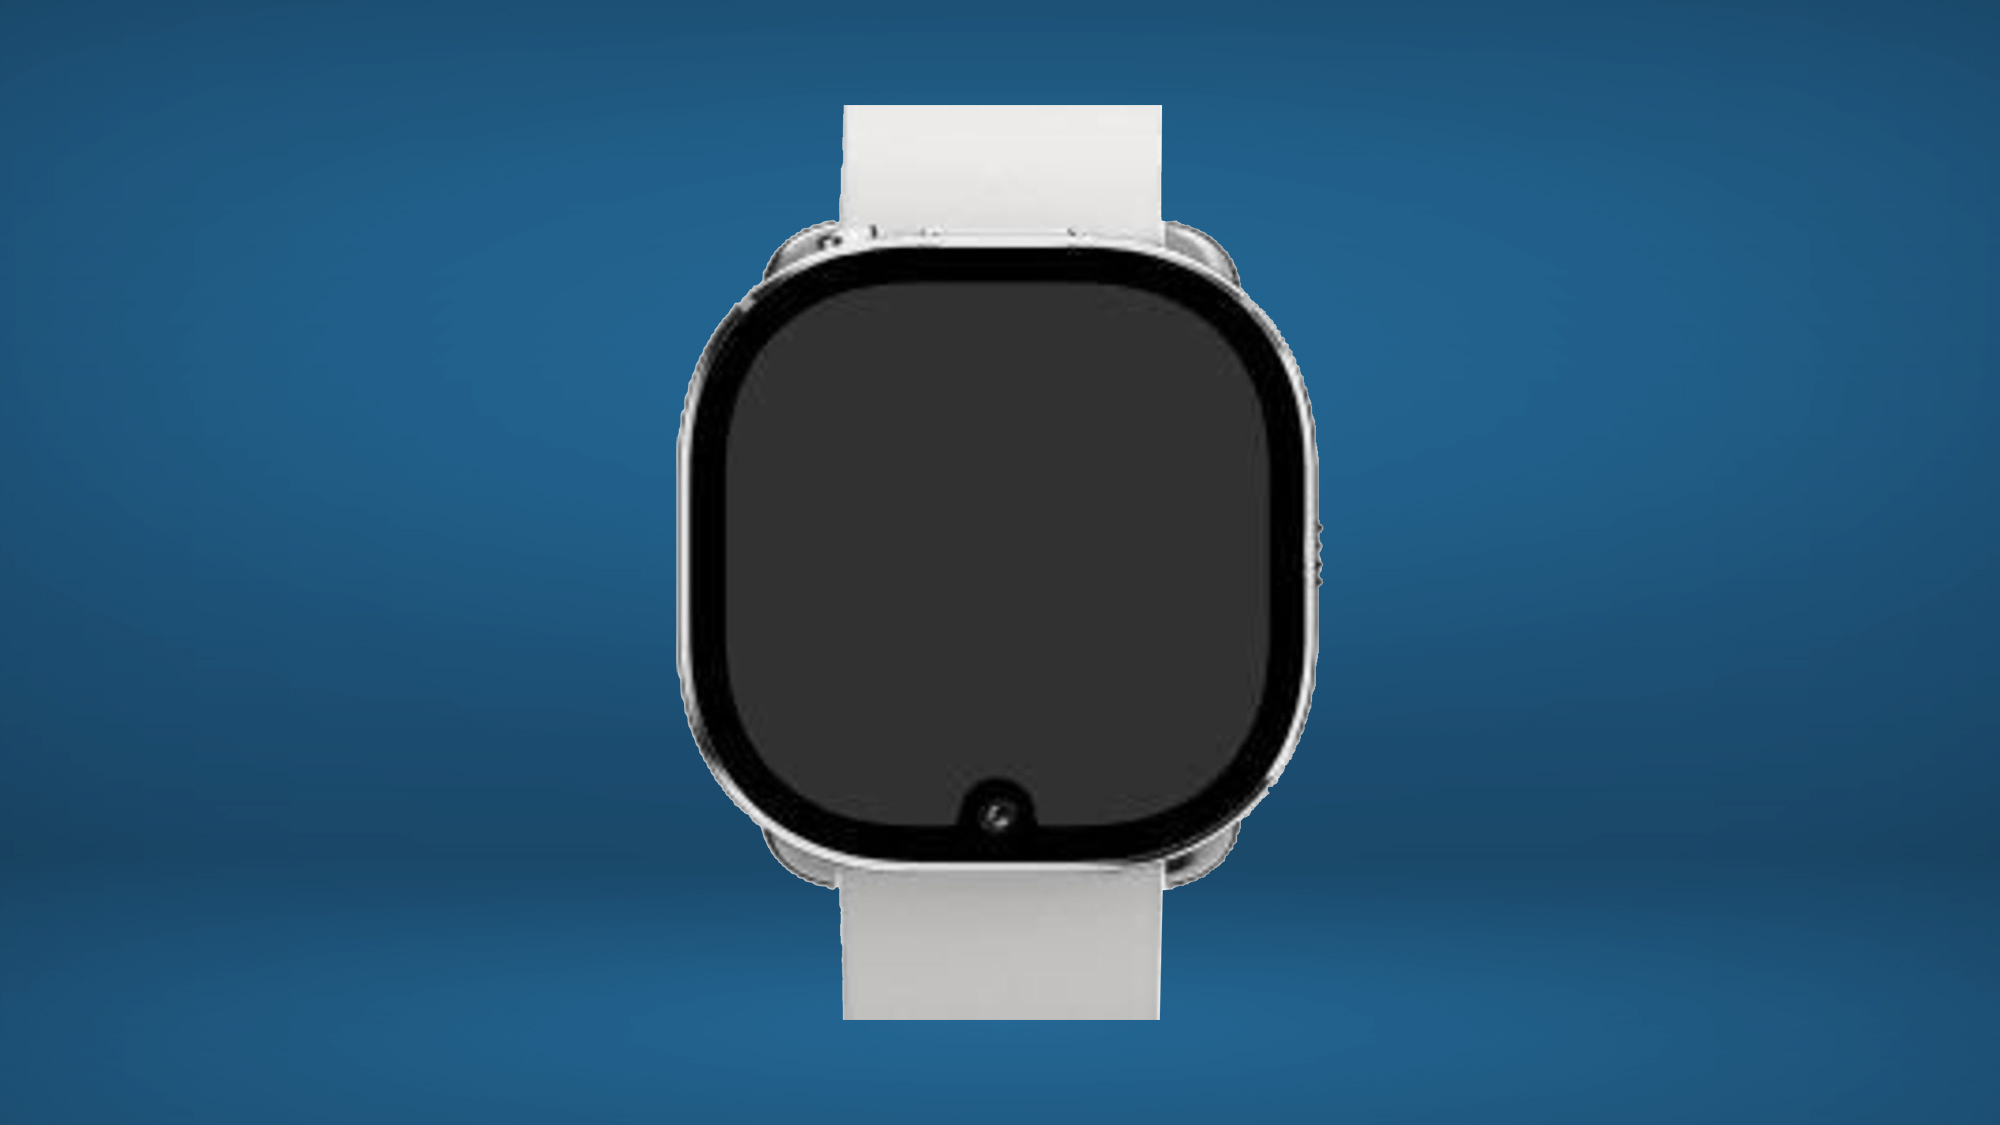 conception de fuite facebook/meta watch avec encoche de caméra sur fond bleu